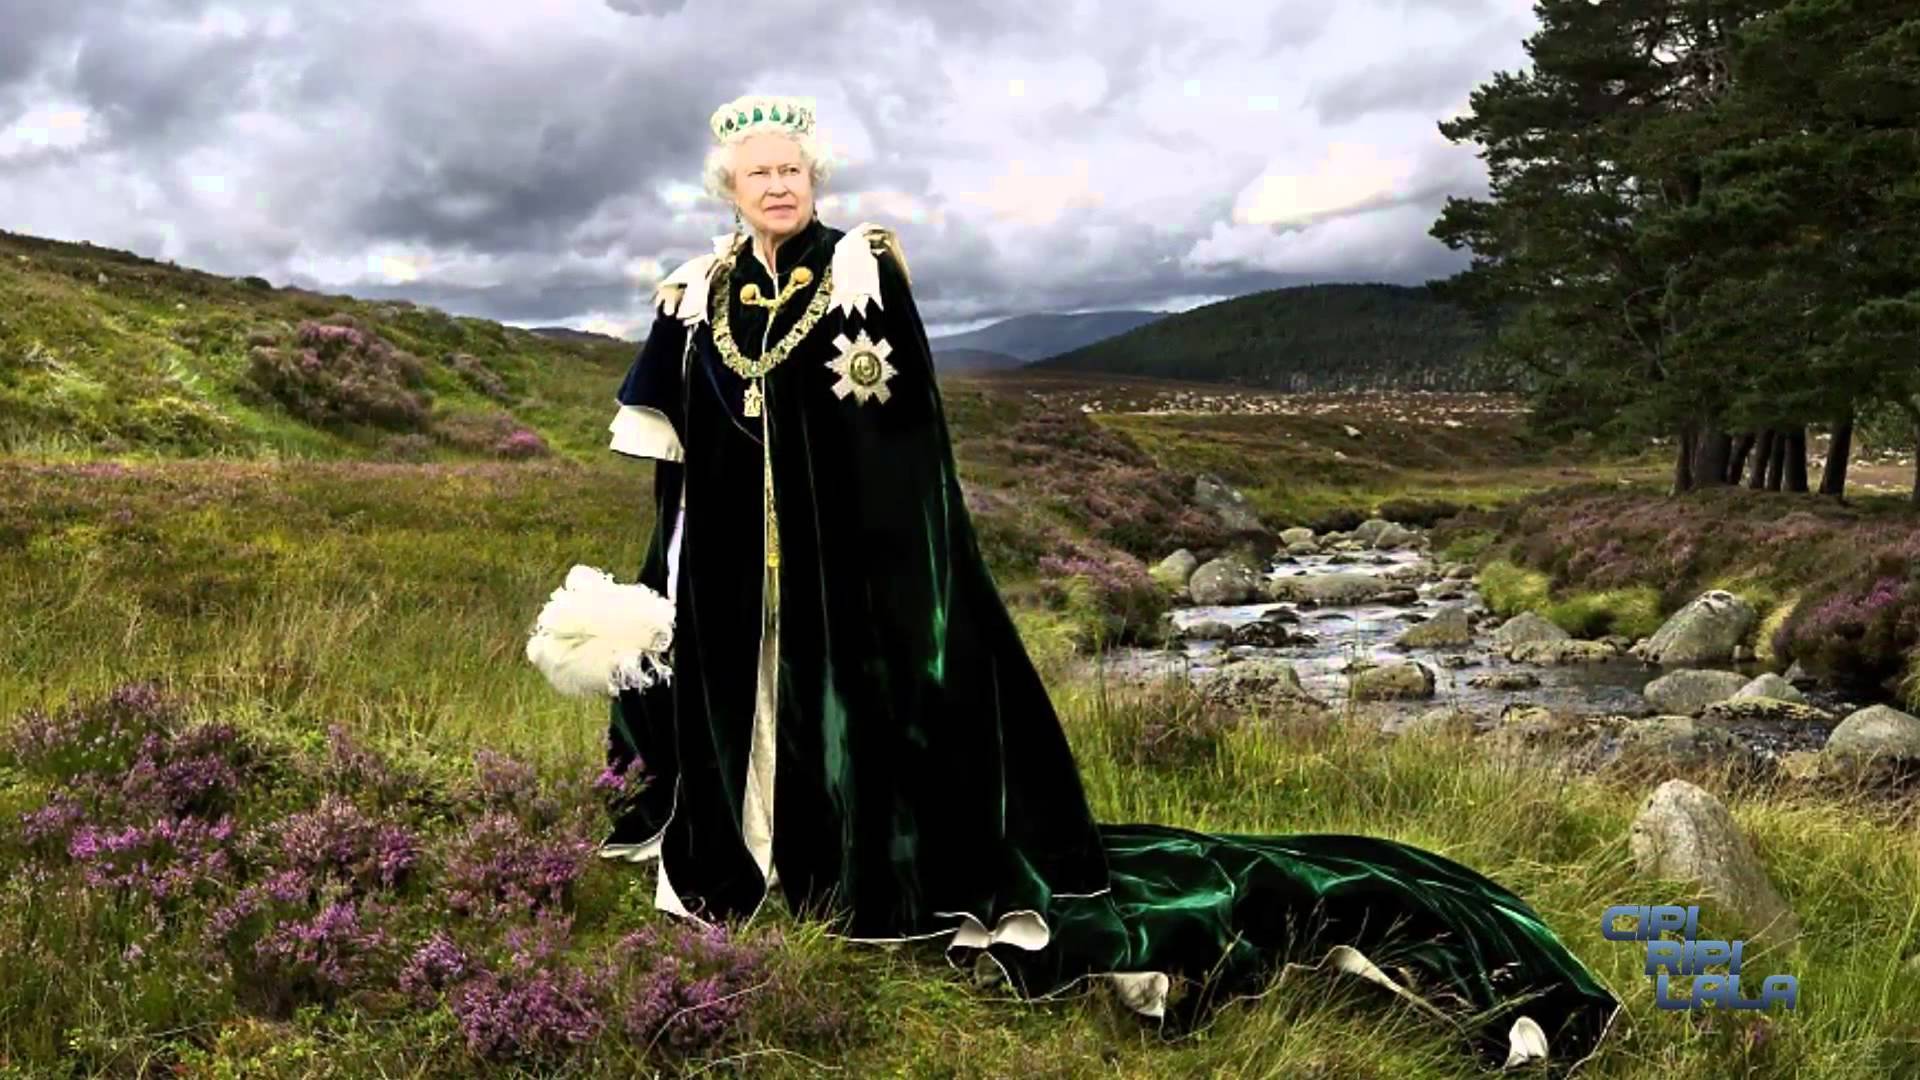 عکس HD جالب از ملکه انگلستان در طبیعت برای اینستاگرام 